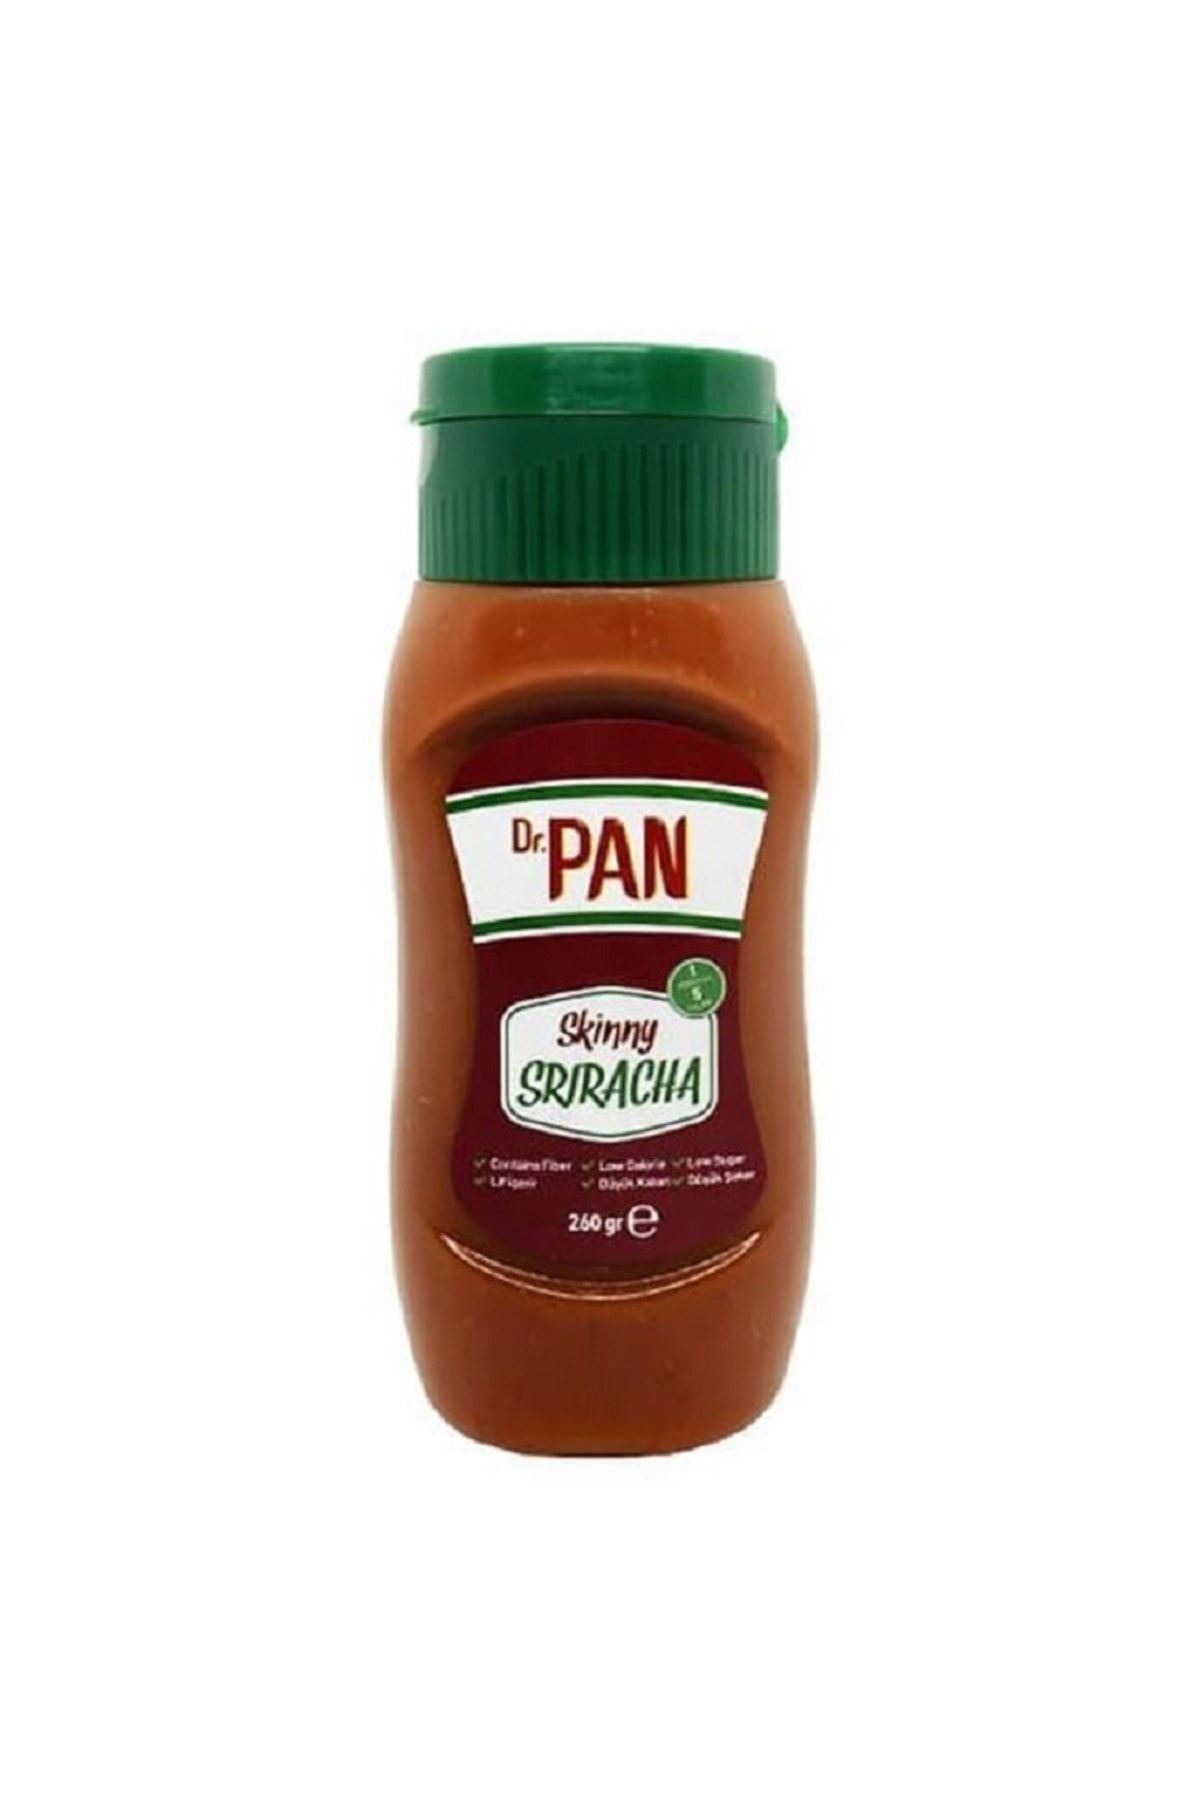 Dr Pan Şekersiz Sriracha Sos ( Düşük Kalorili -260g)